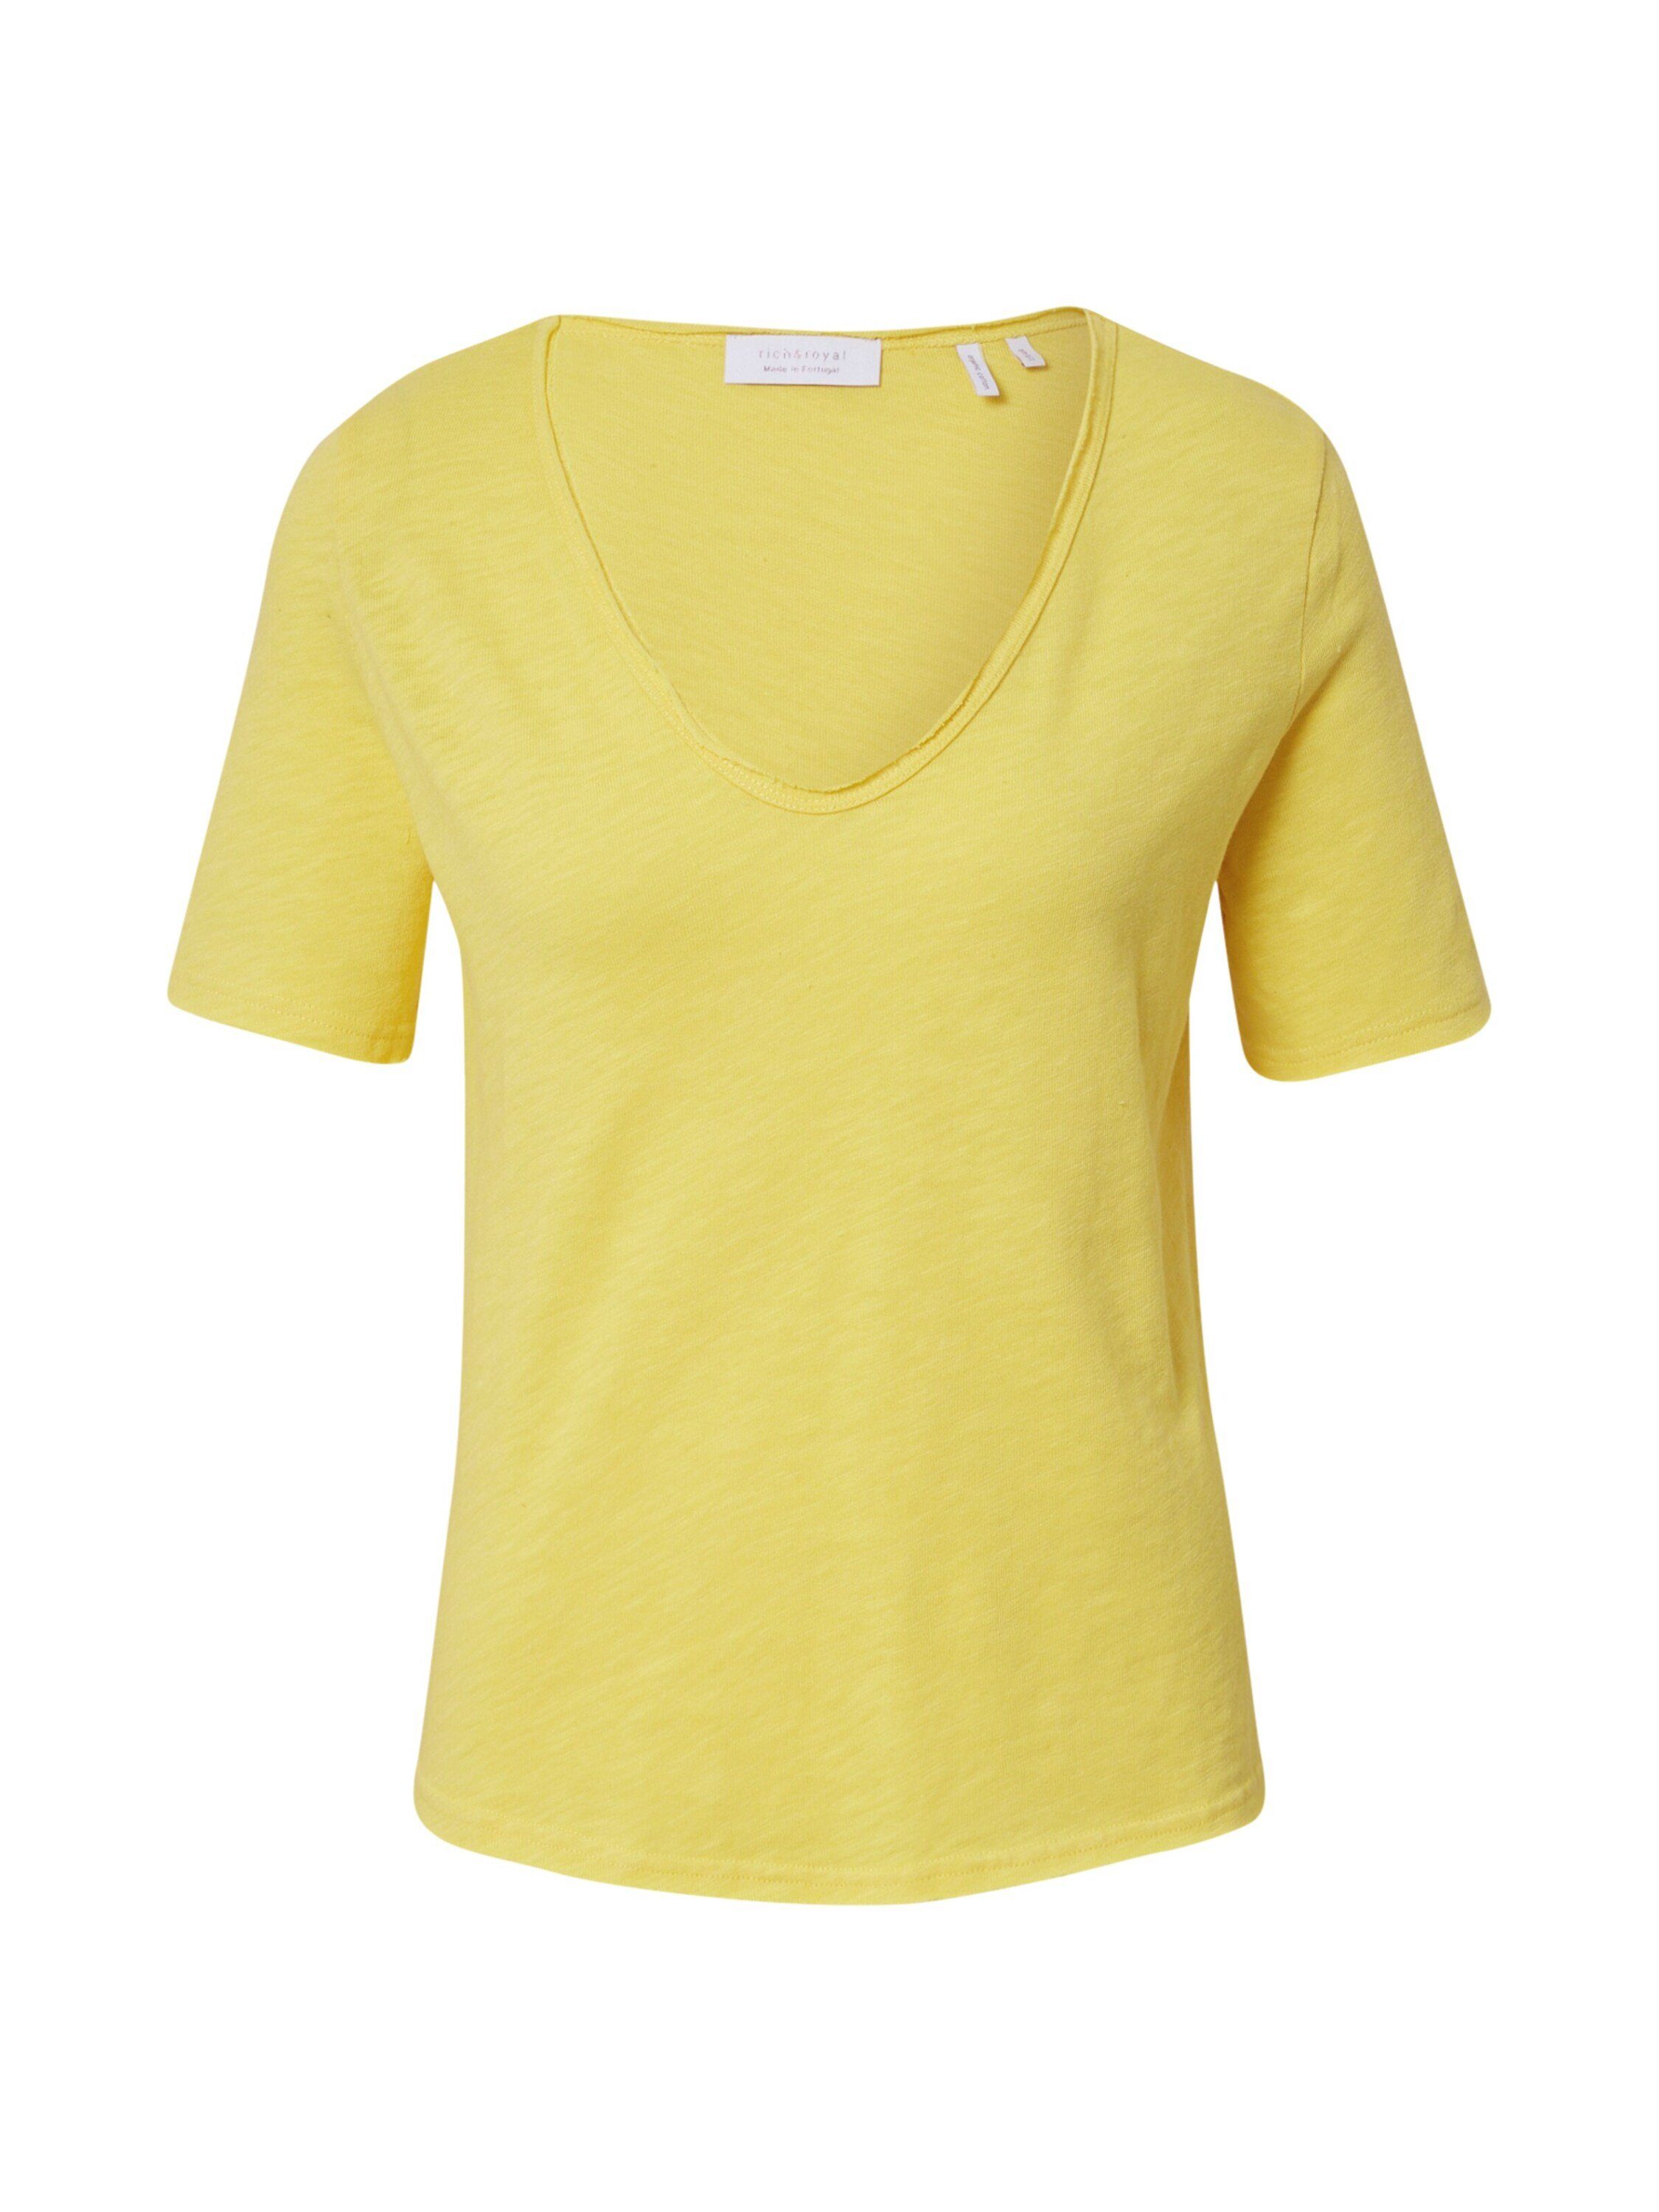 Kleinigkeit Shirts für Damen online kaufen | OTTO